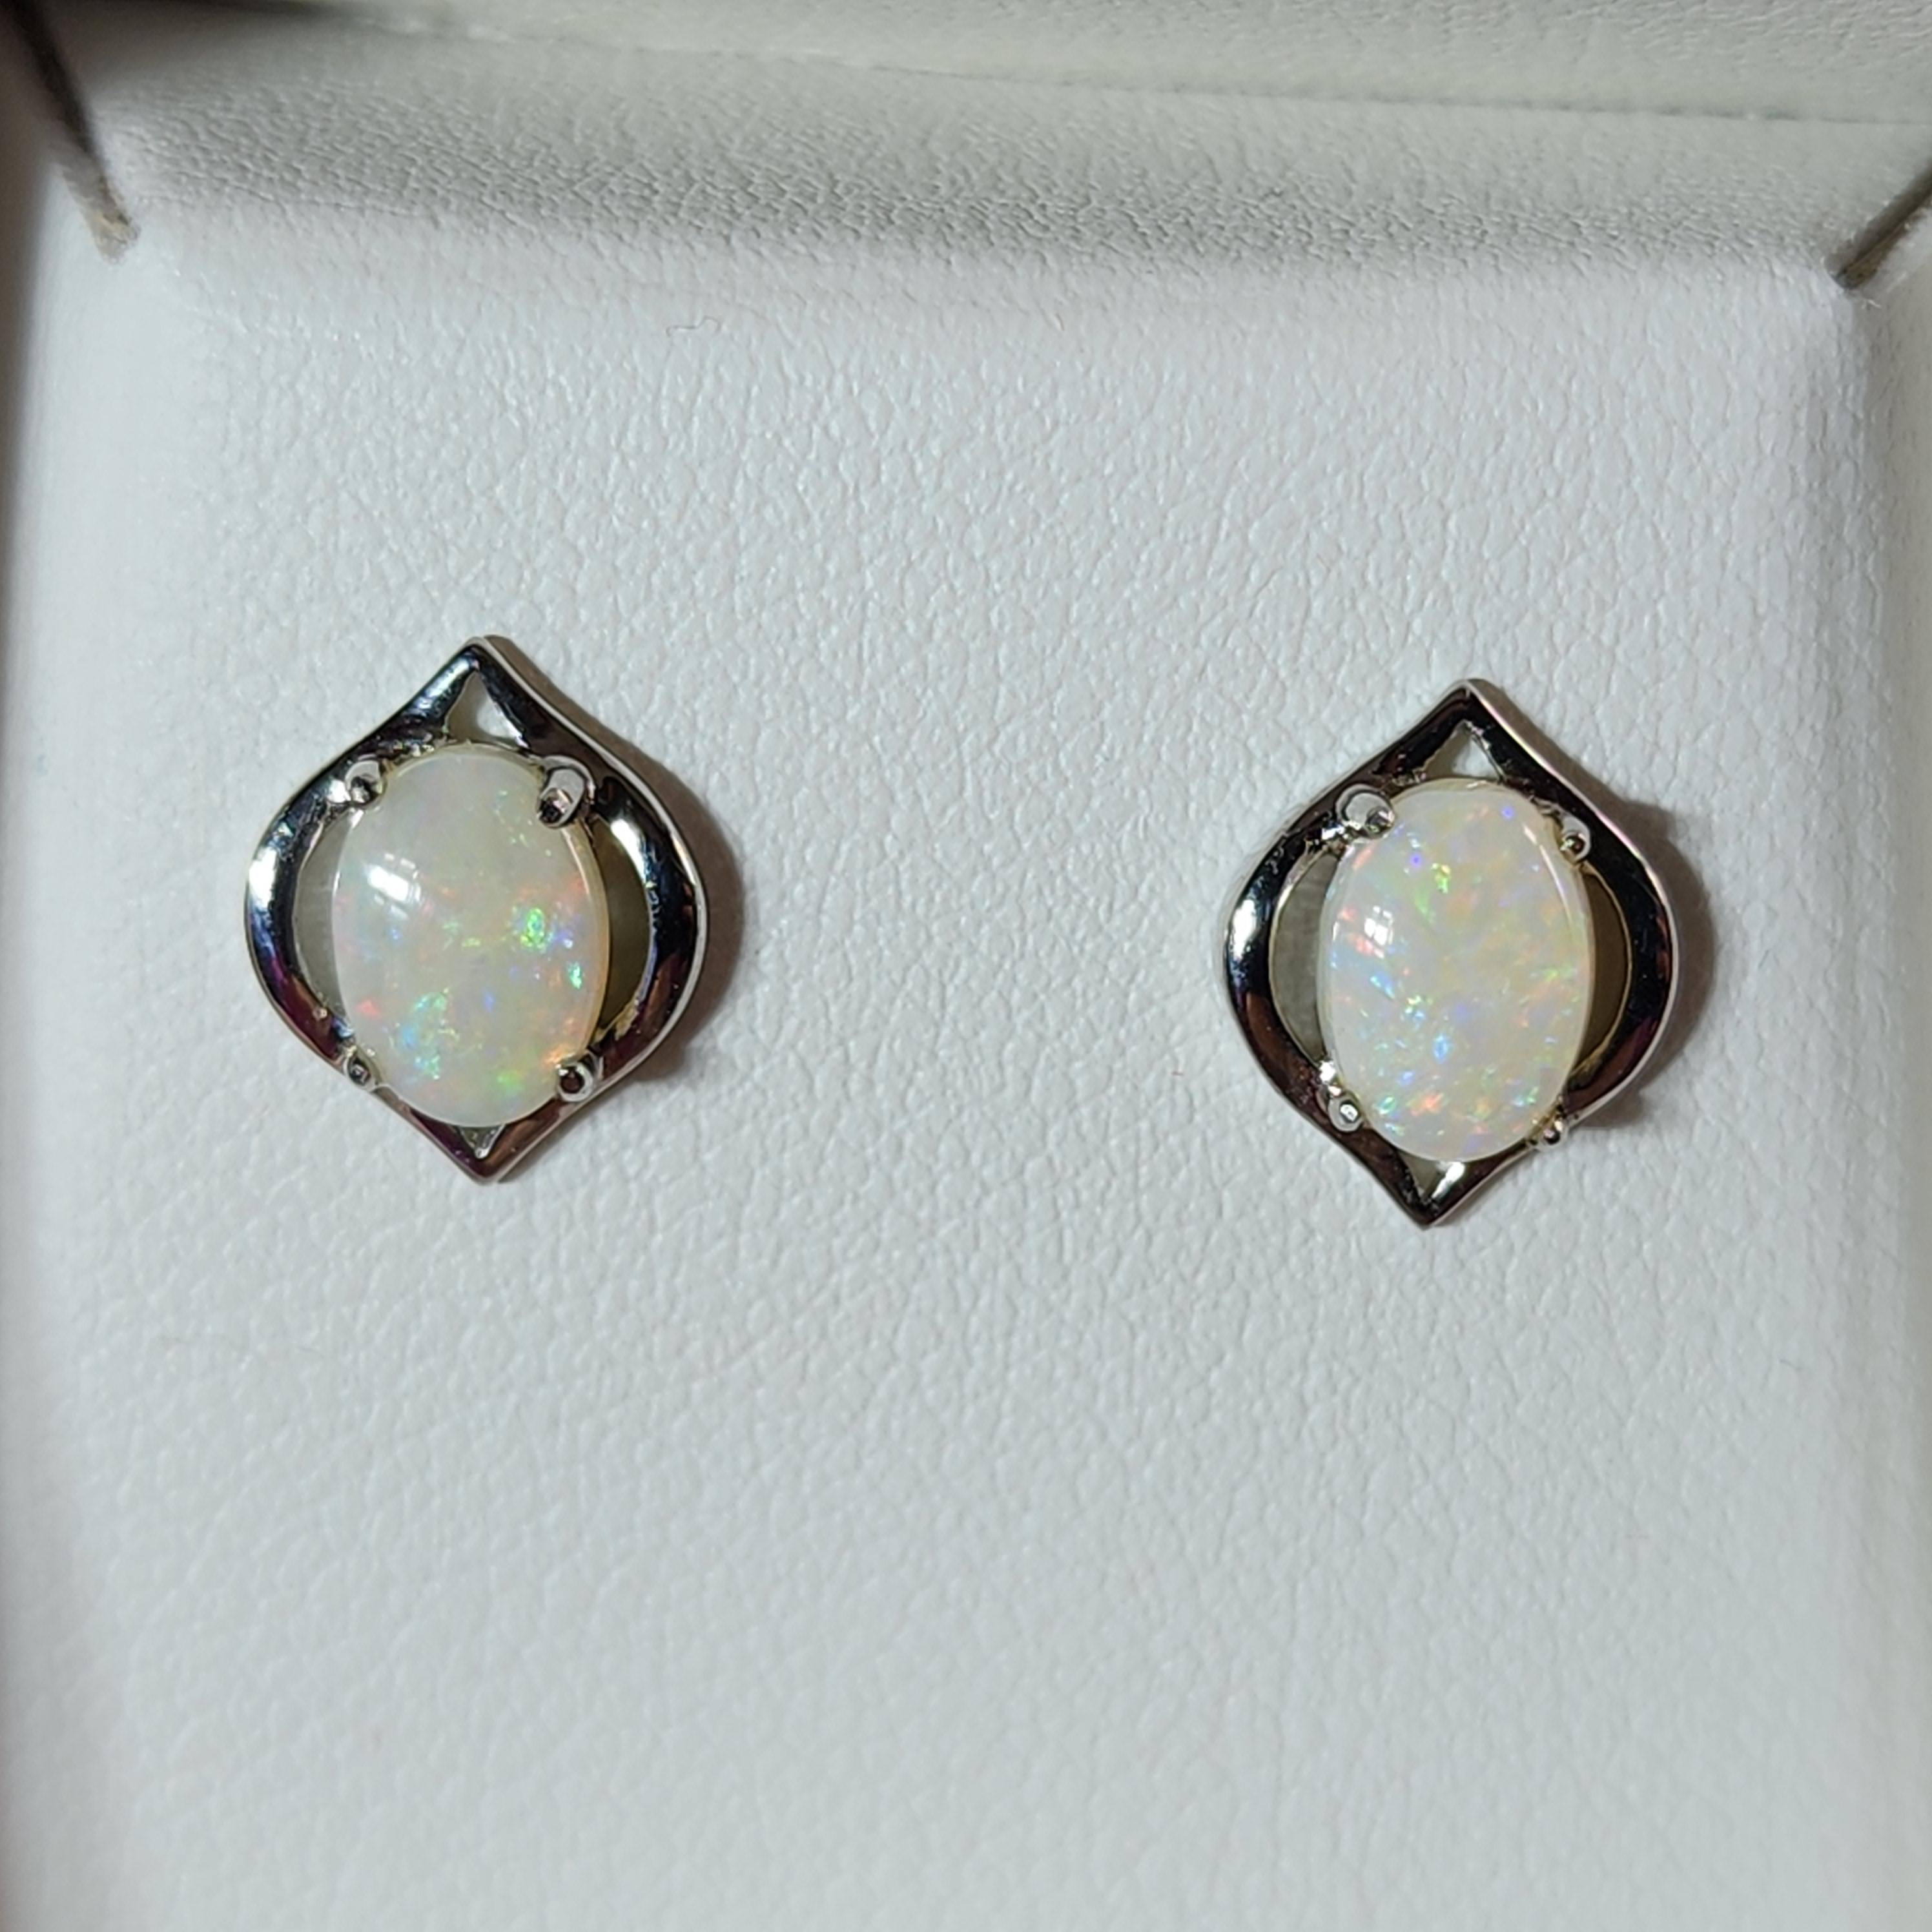 Australian Light Opal Earrings - Australian Opal Jewellery Online Store